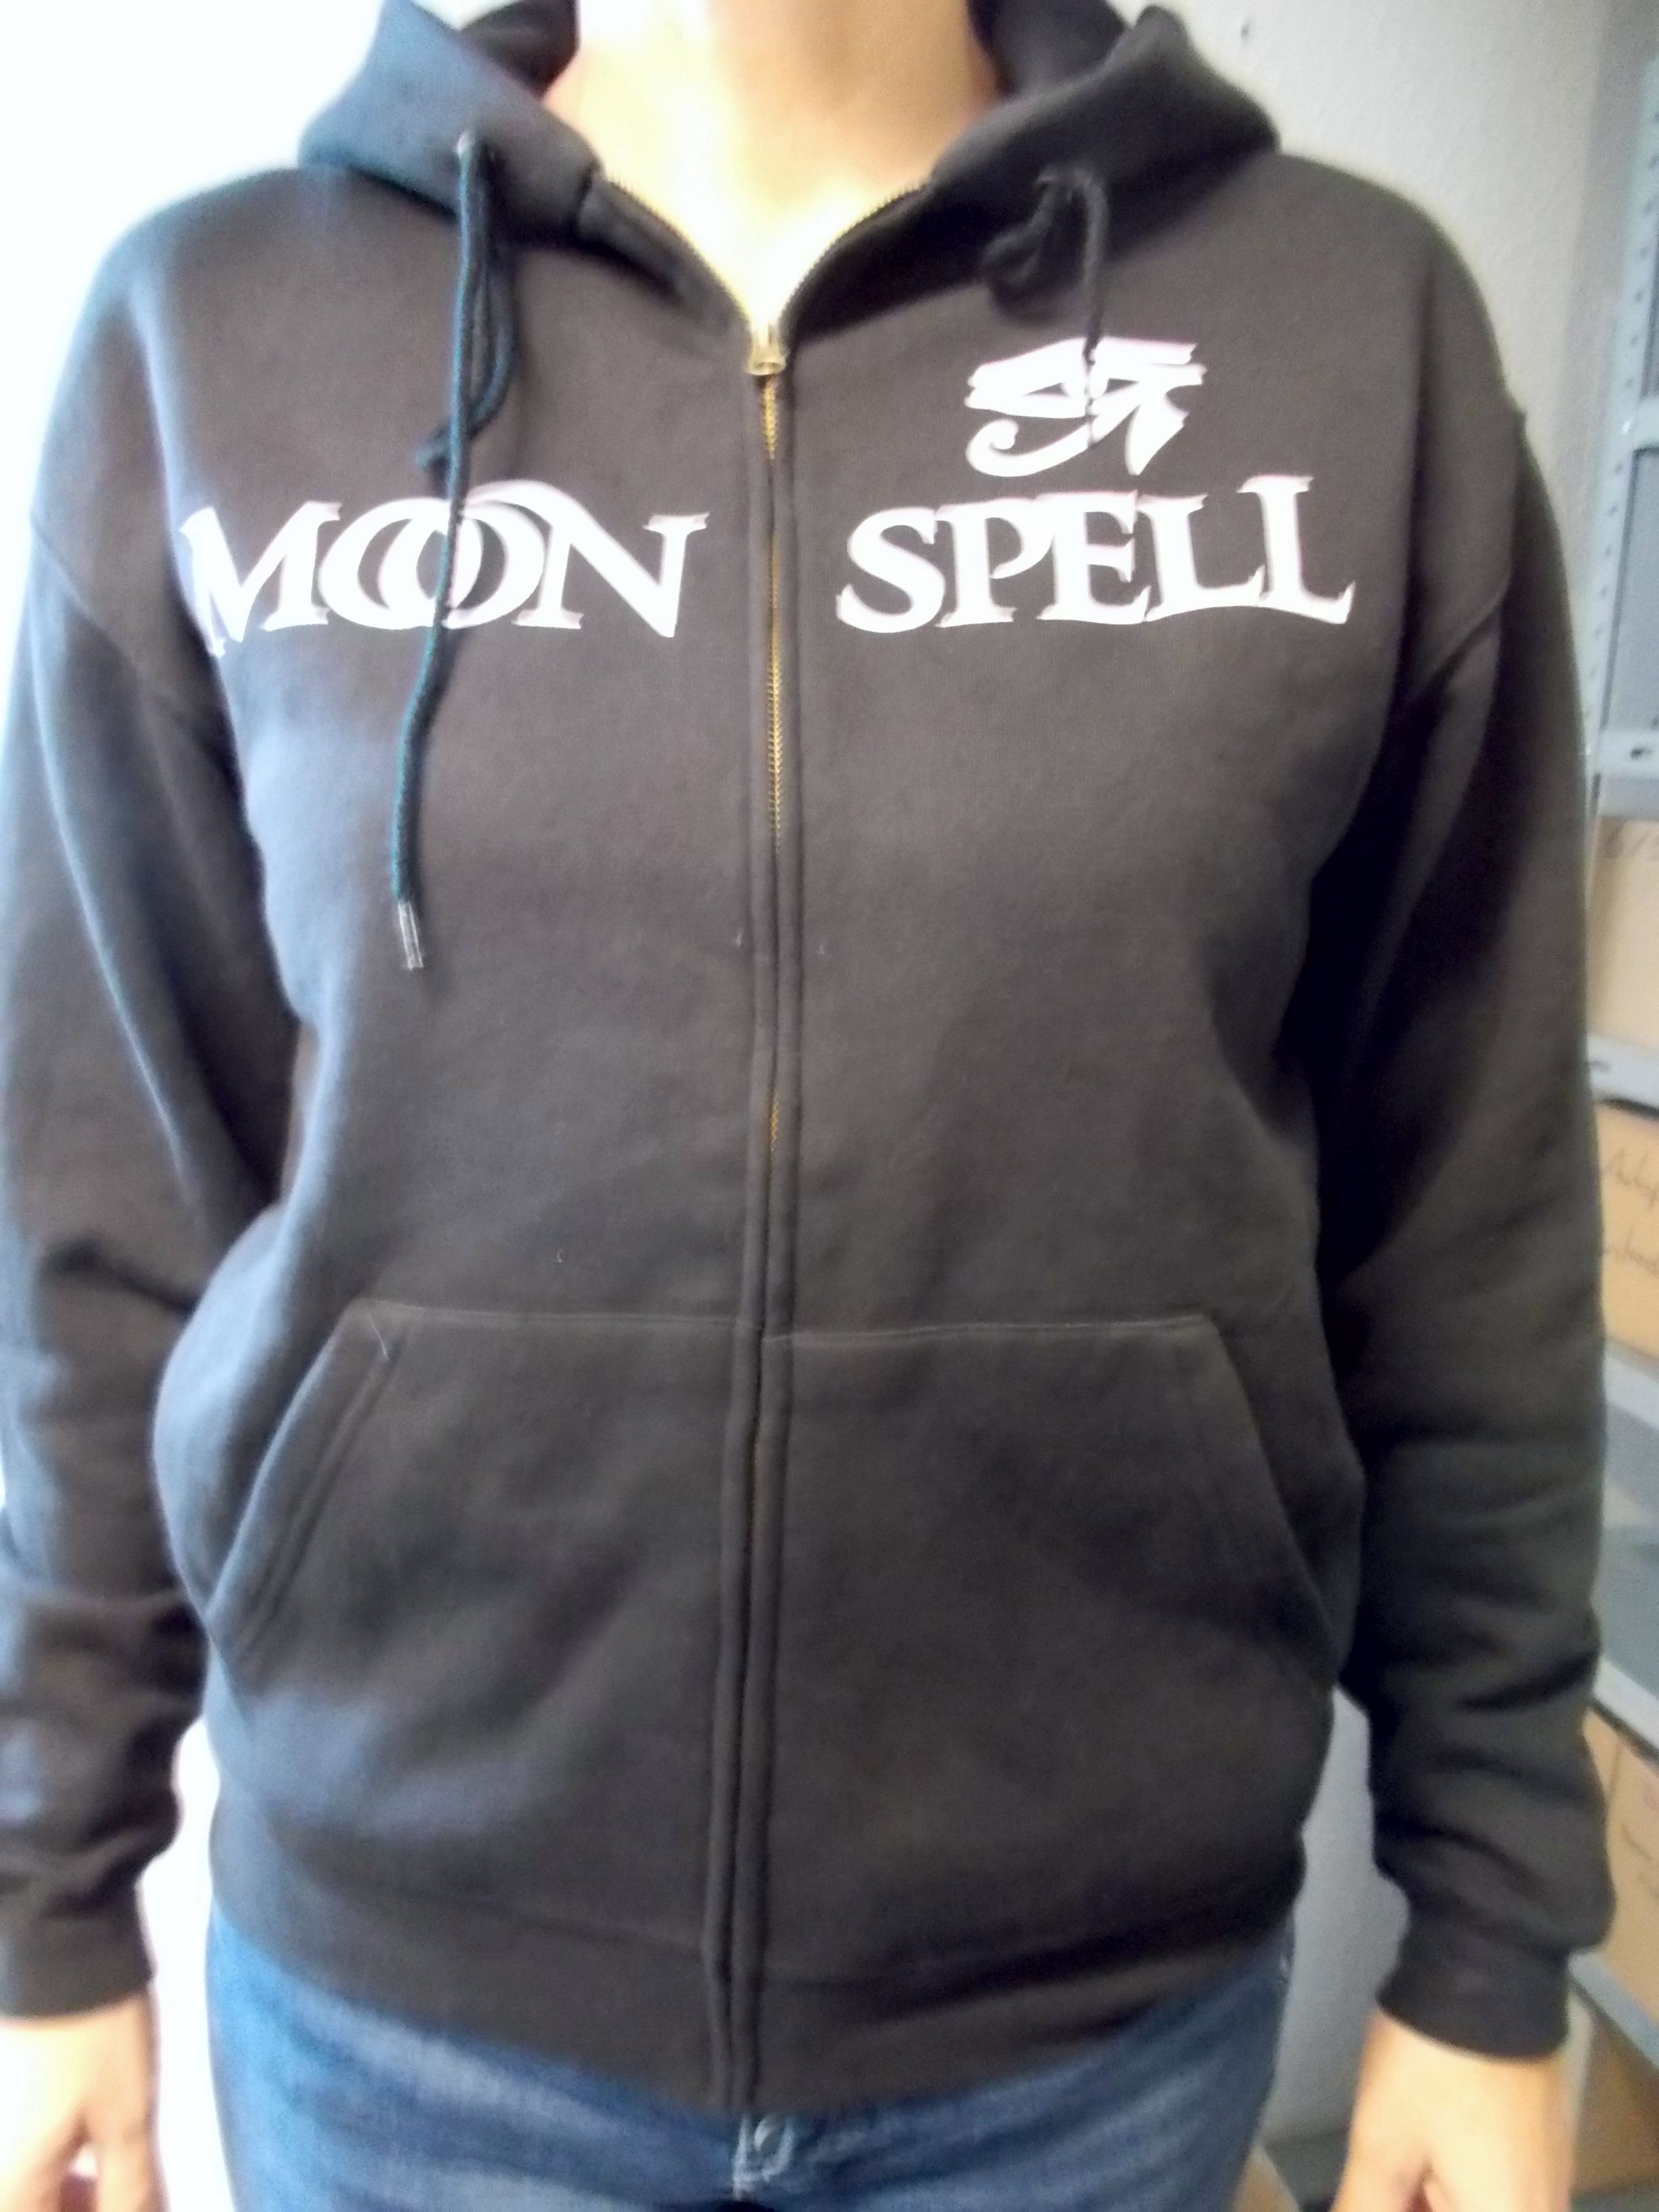 Moonspell - Logo